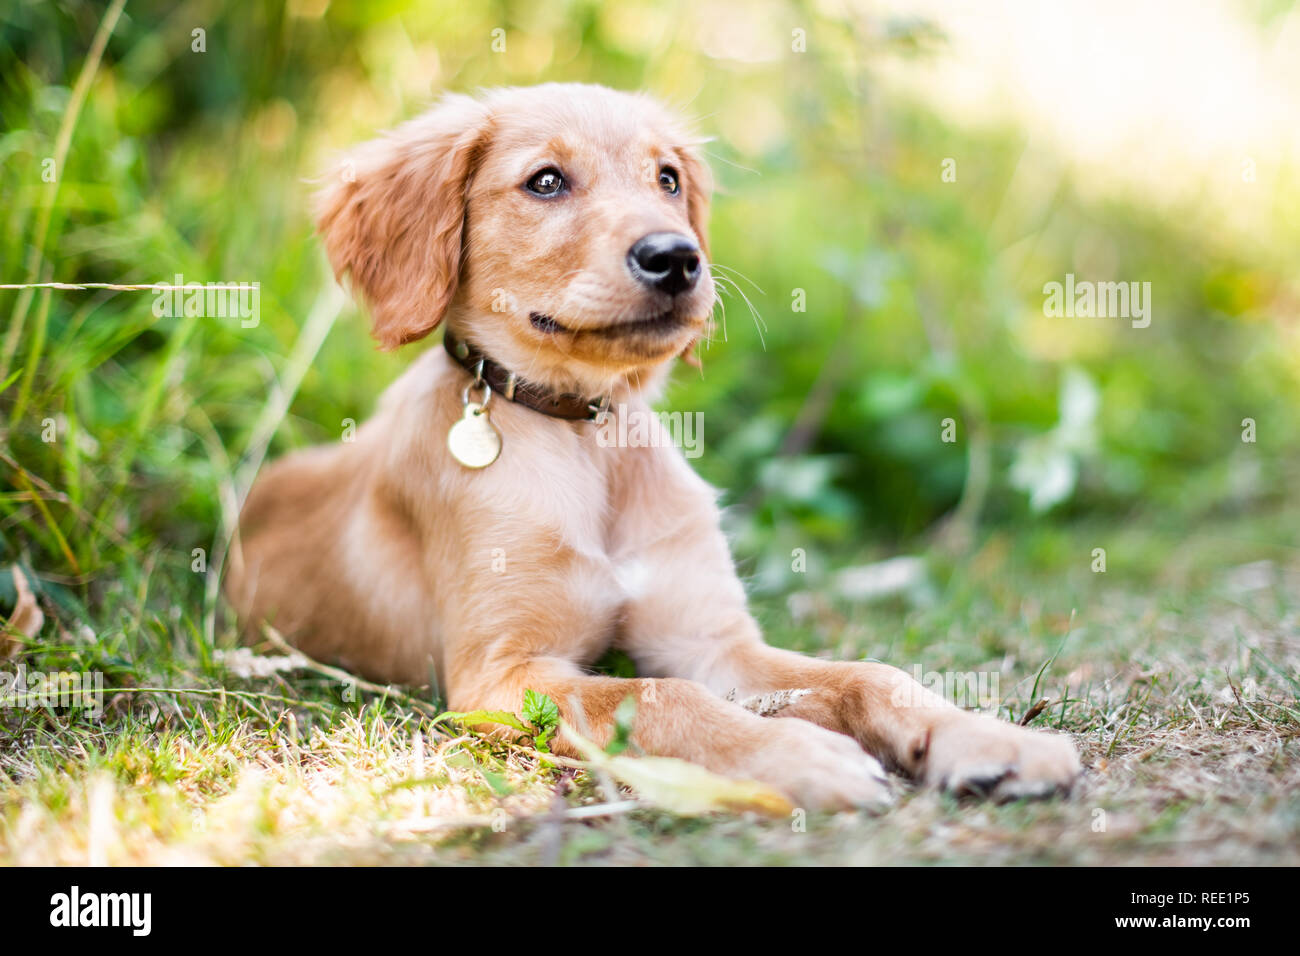 Un Golden Retriever cucciolo giacente in erba ruvida con la bocca chiusa che indossa un collare in pelle con un round pendente in metallo Foto Stock